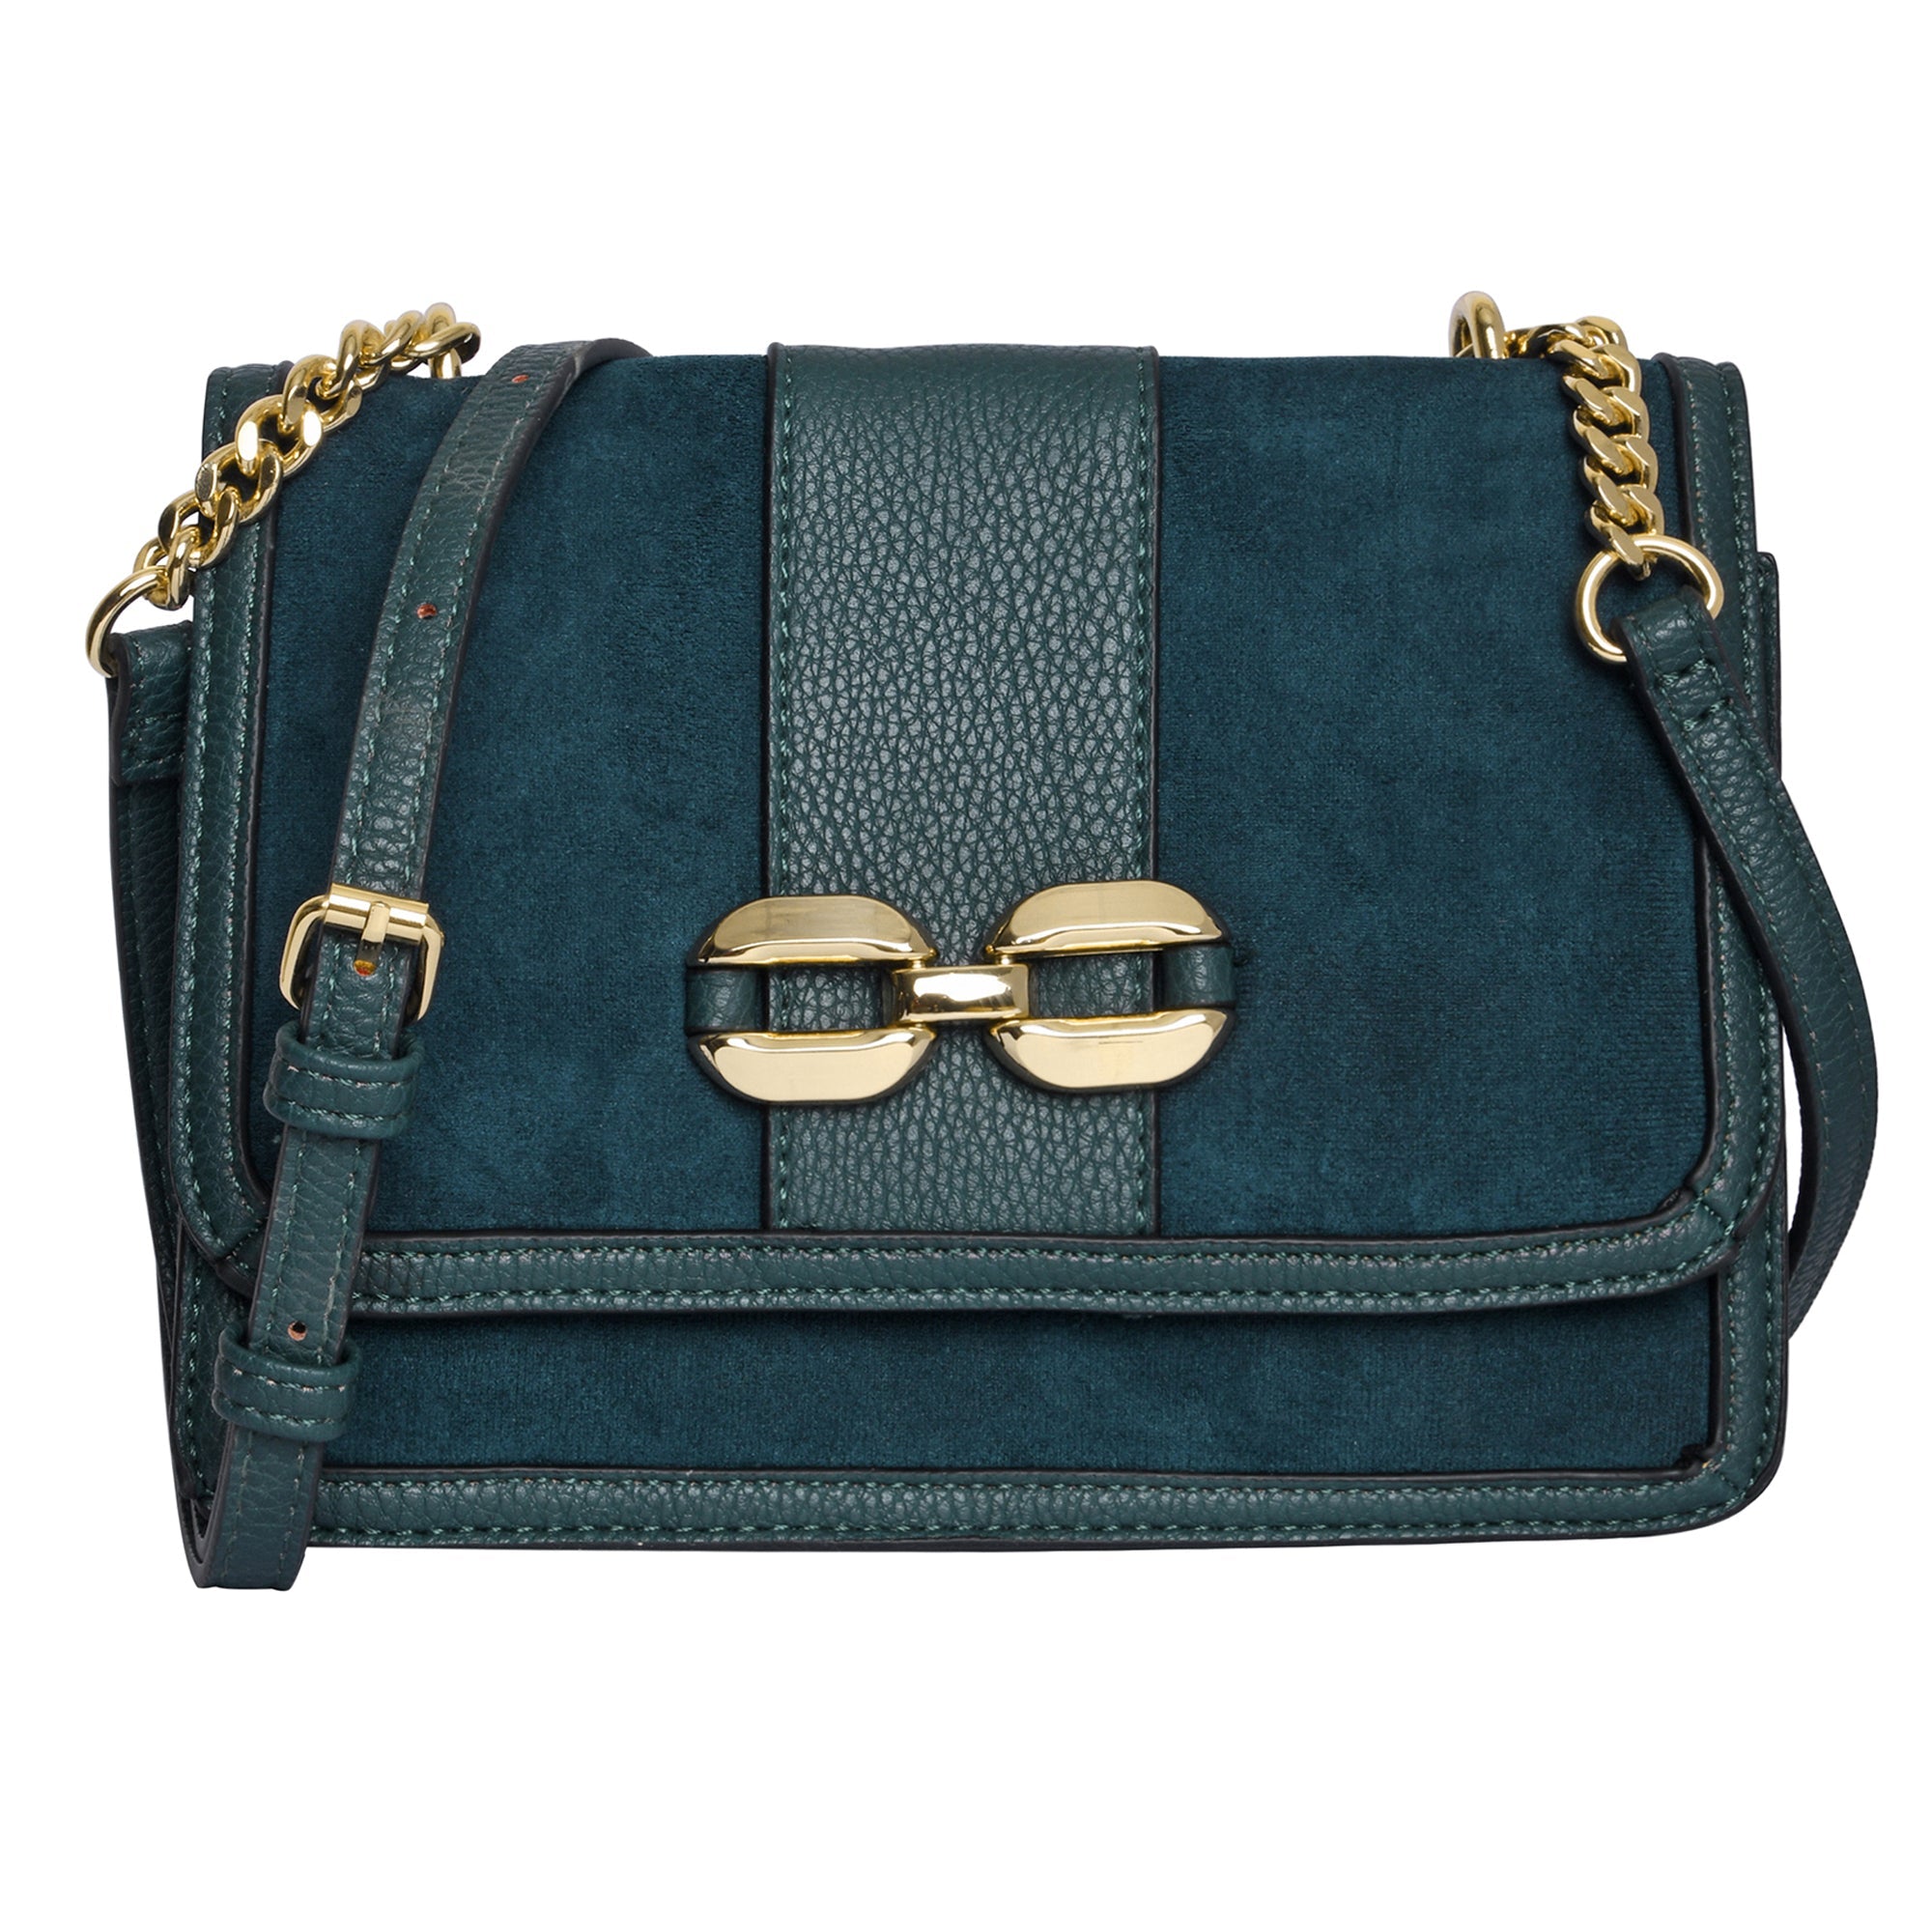 Accessorize London Women's Faux Leather Blue Suedette Chain Sling Bag